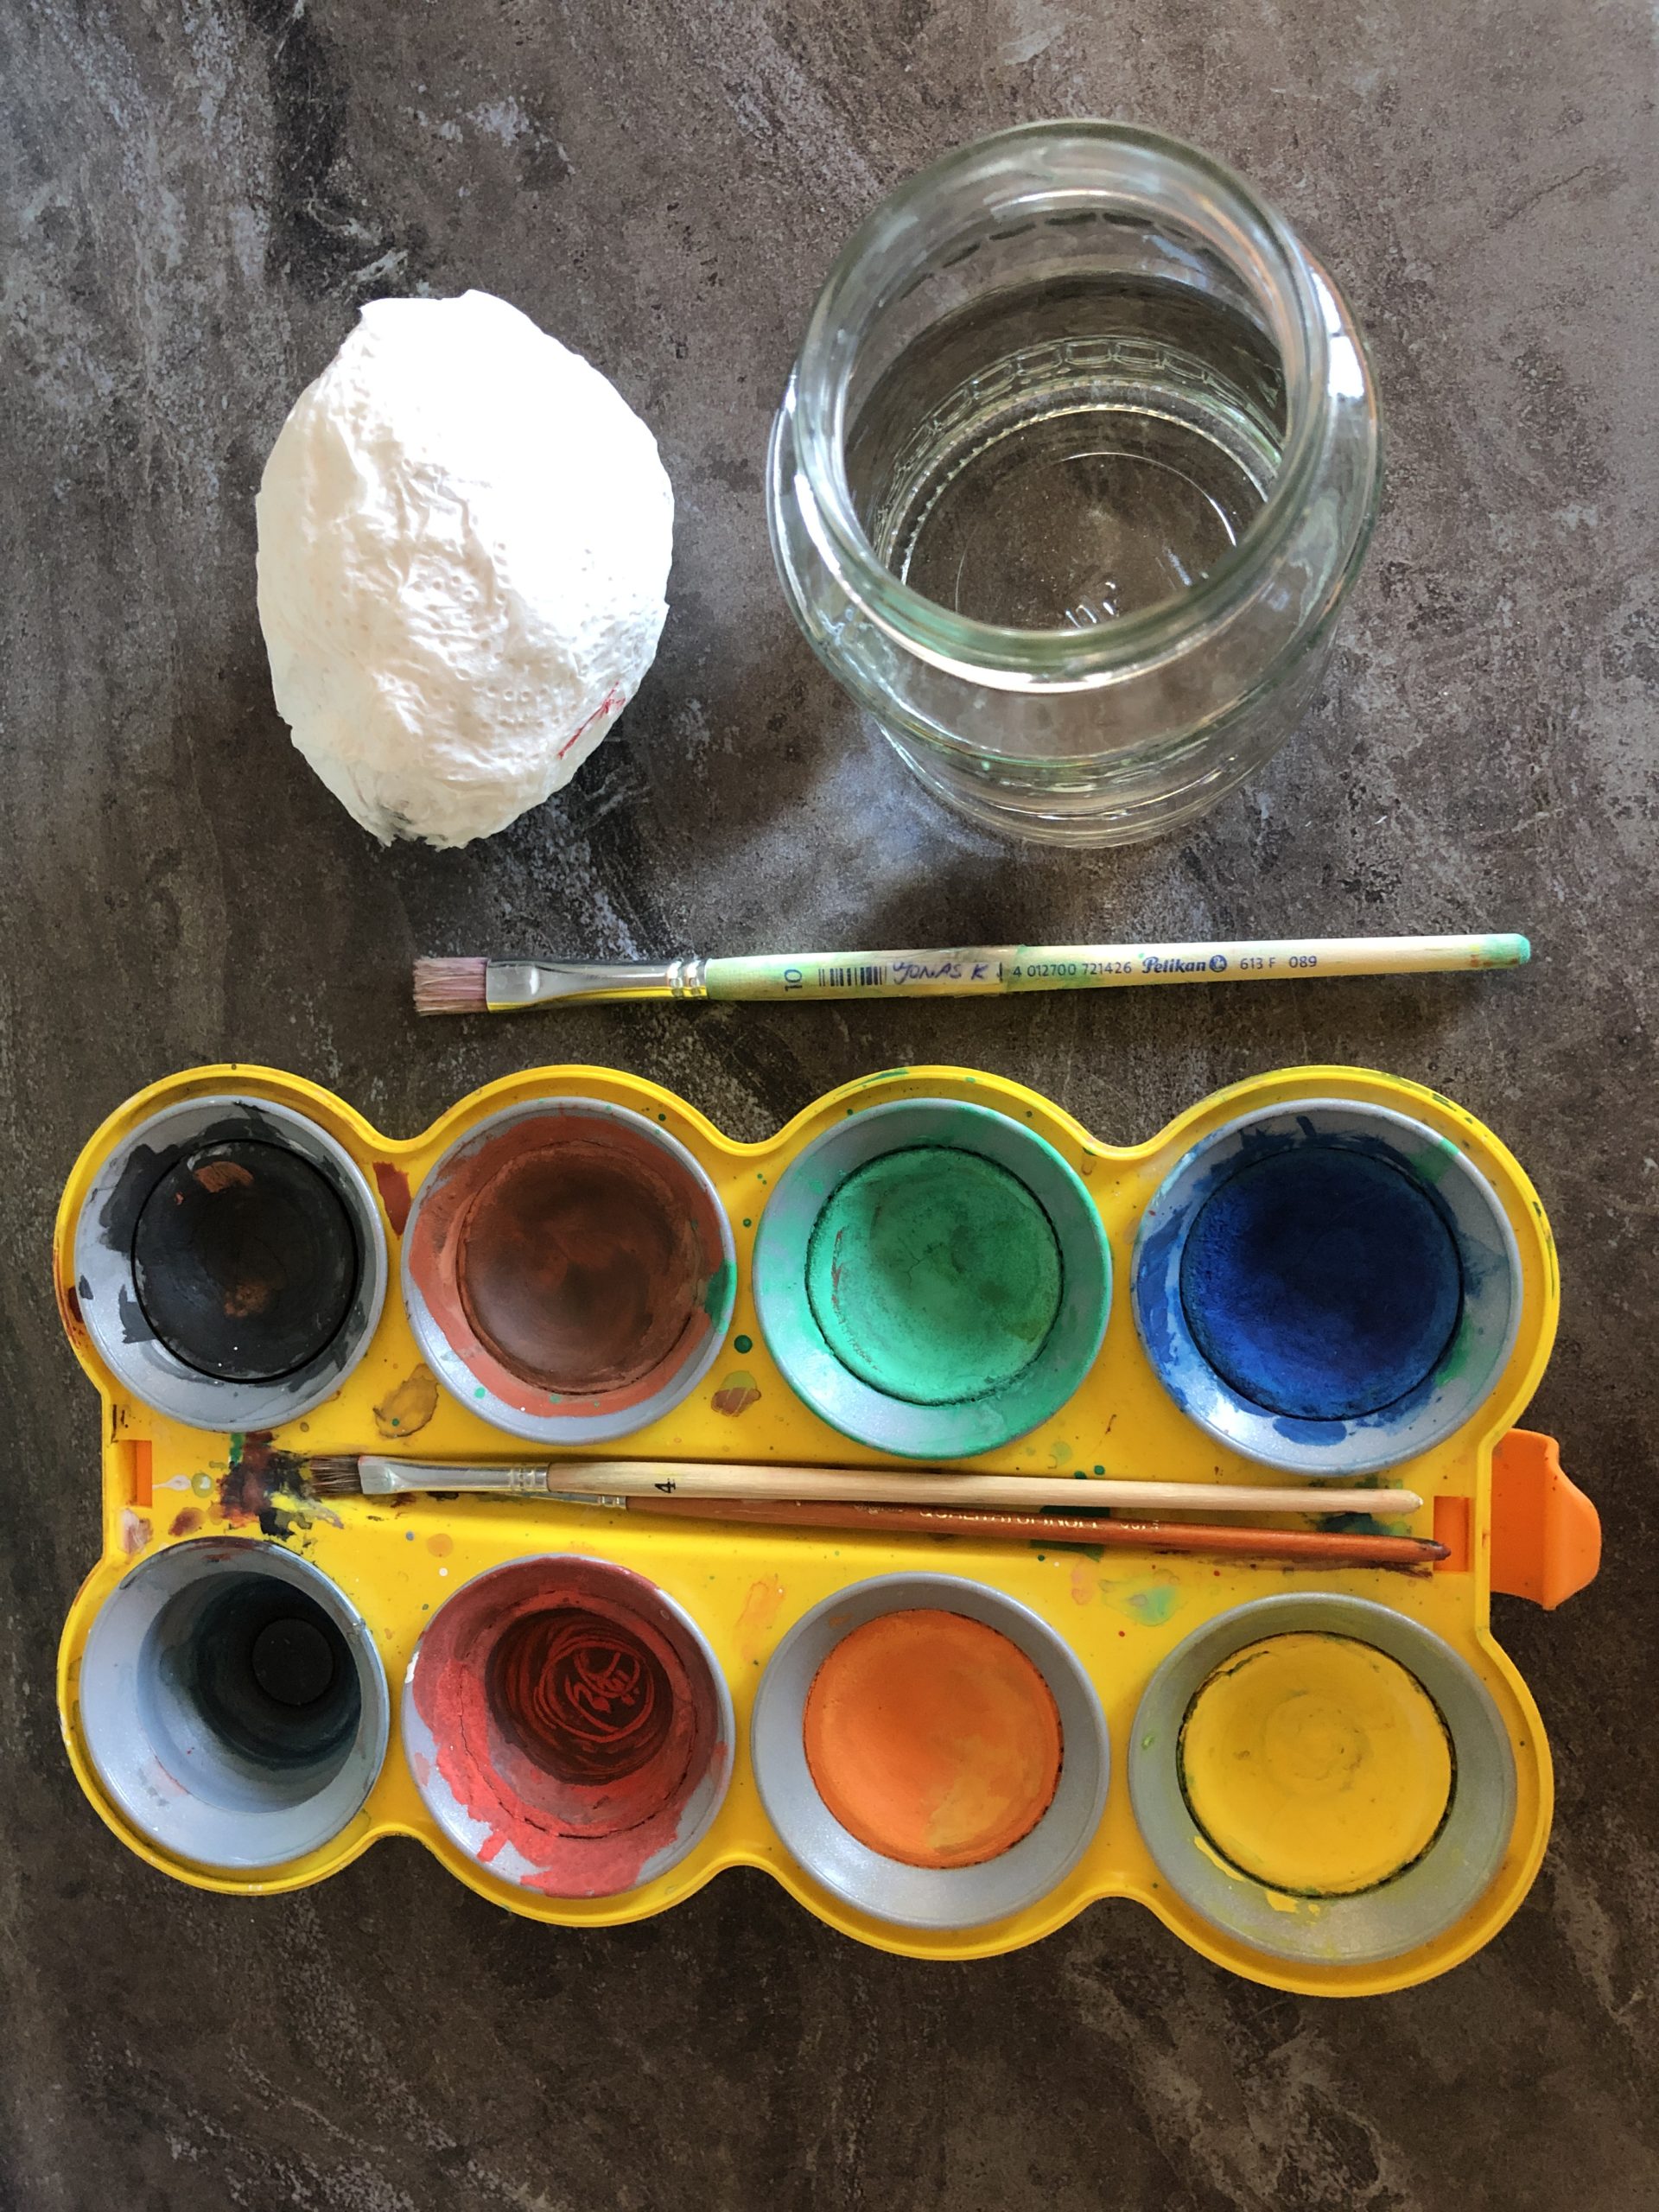 Bild zum Schritt 2 für die Kinder-Beschäftigung: 'Wasserfarben, Pinsel und Glas mit Wasser bereitstellen.'